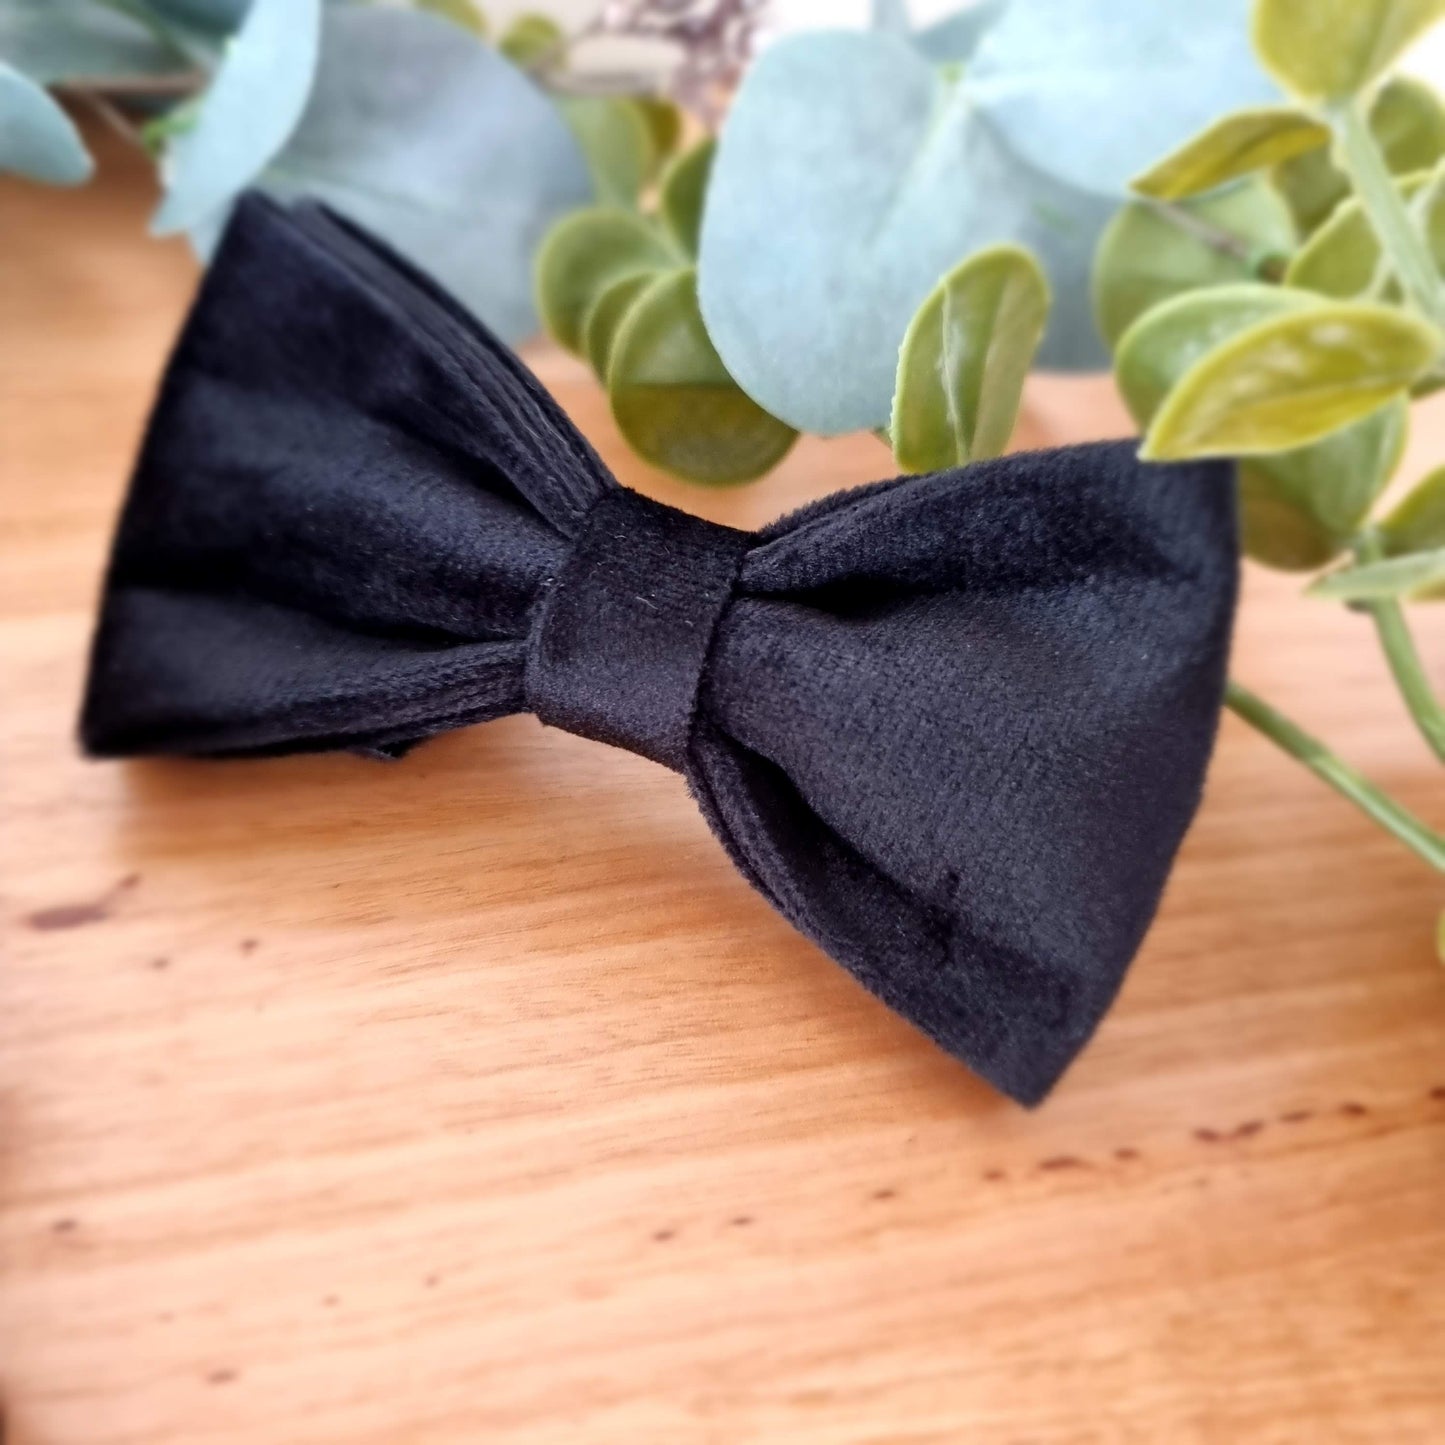 Black velvet dog bow tie